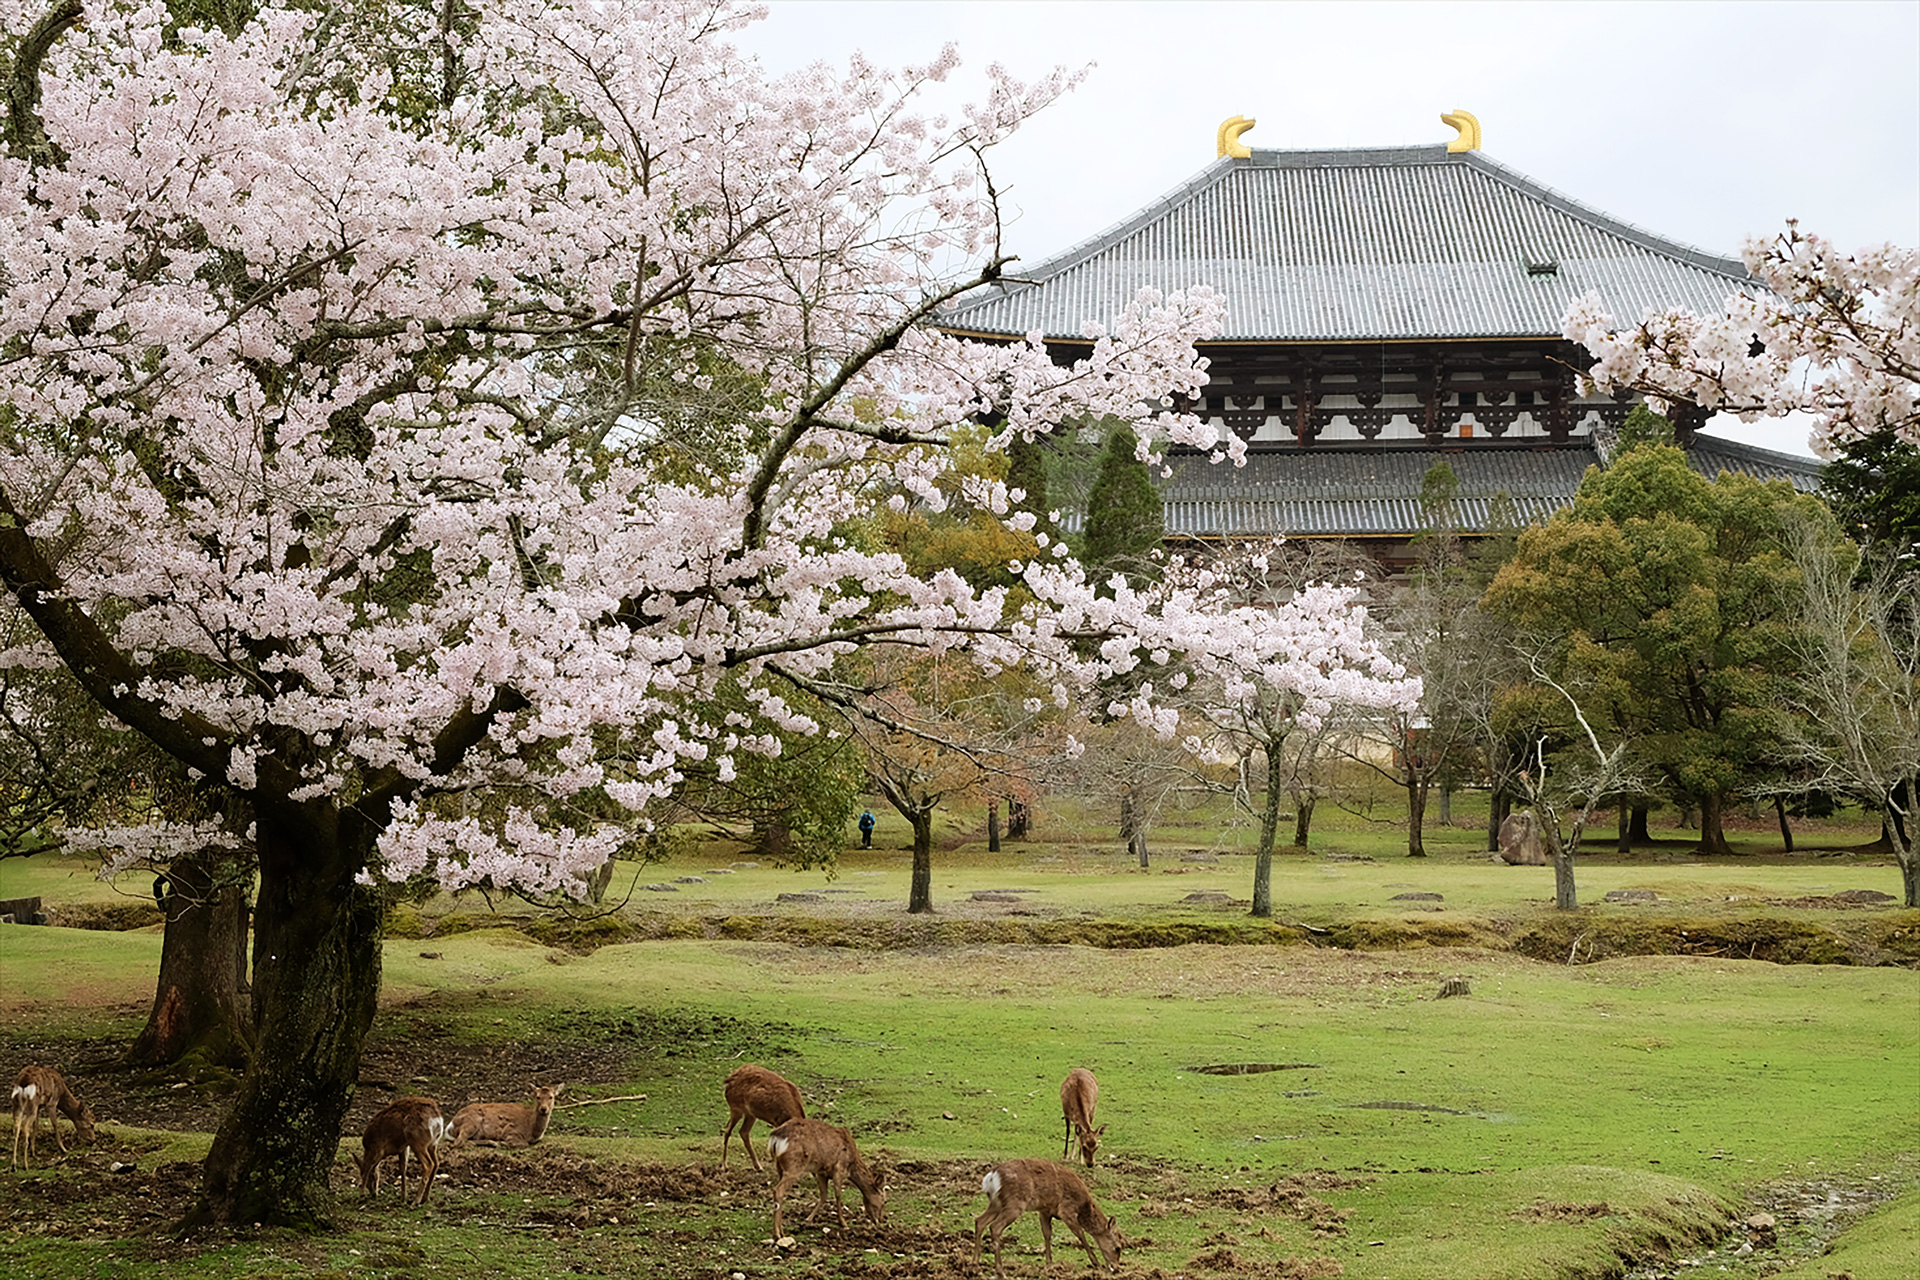 The spirit of sake is enshrined at Nara